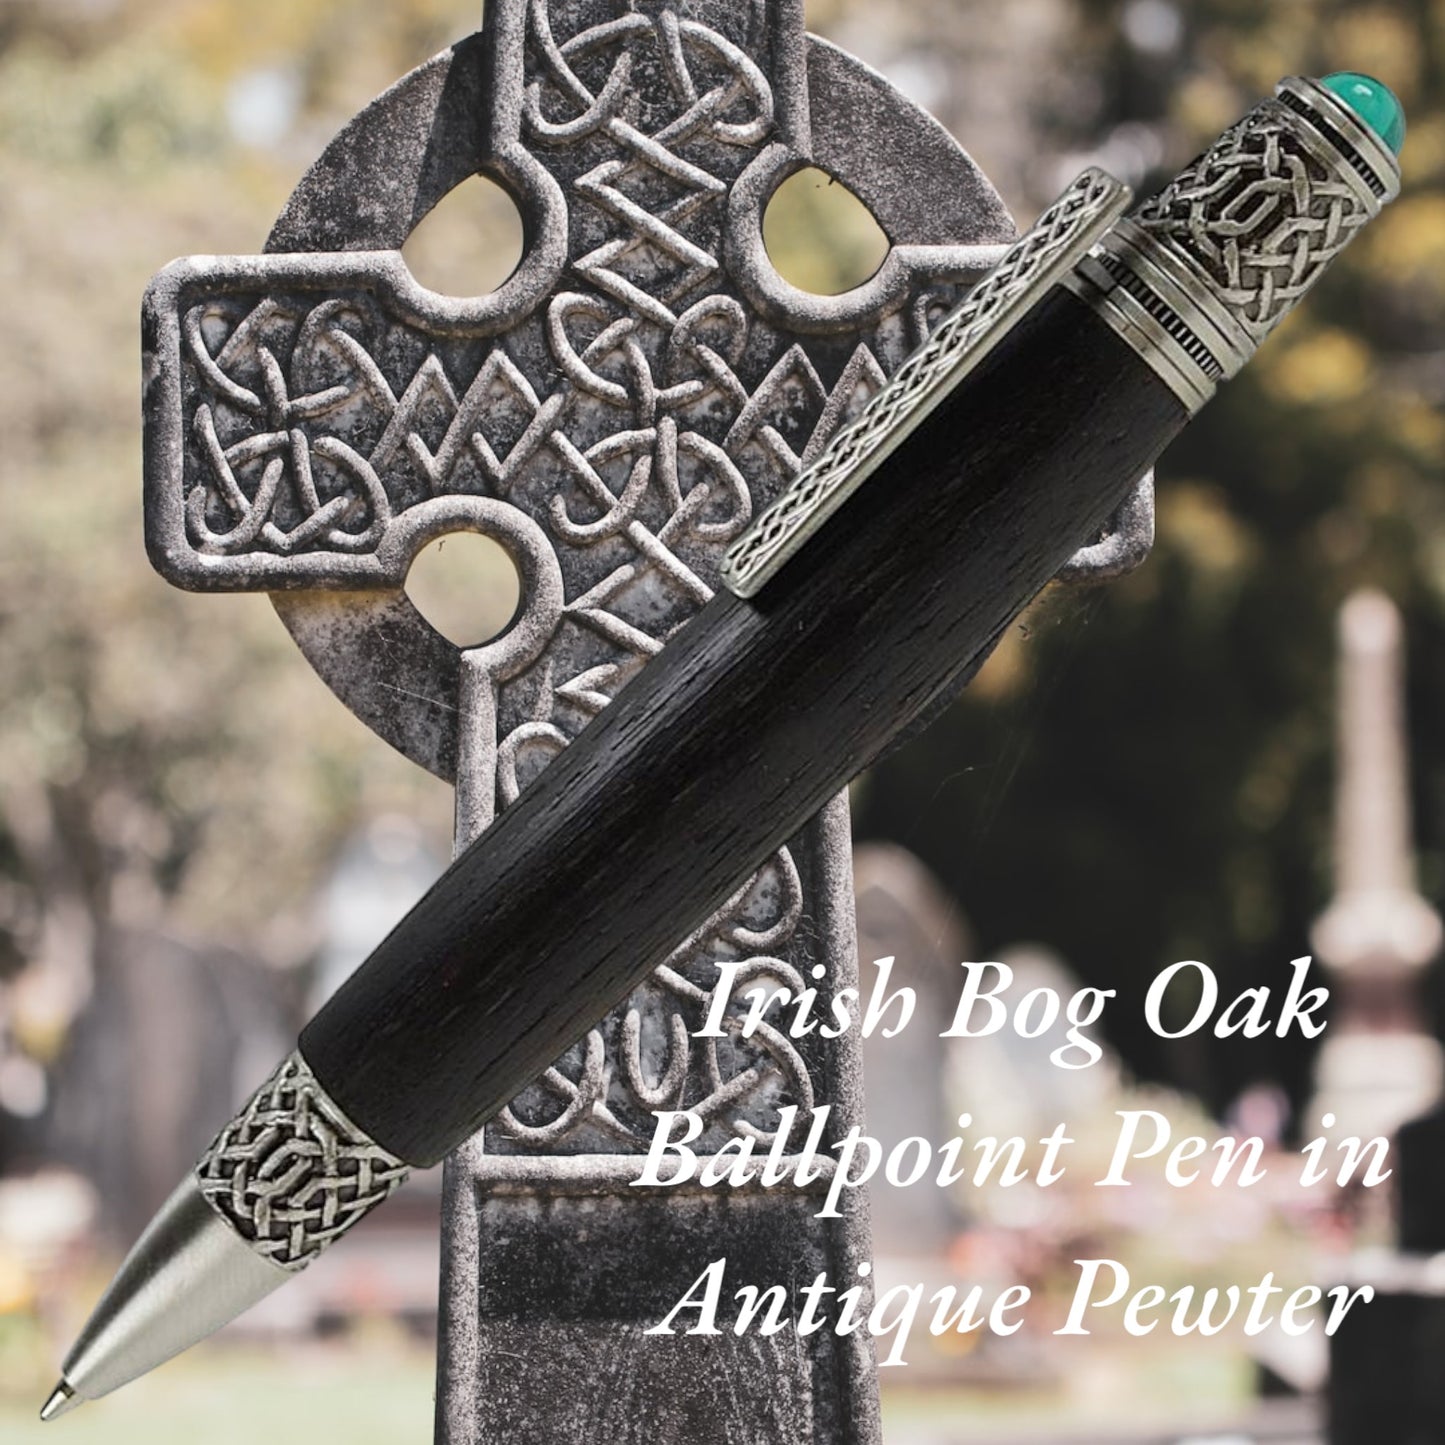 Celtic Knot Pewter pen in Irish Bog Oak